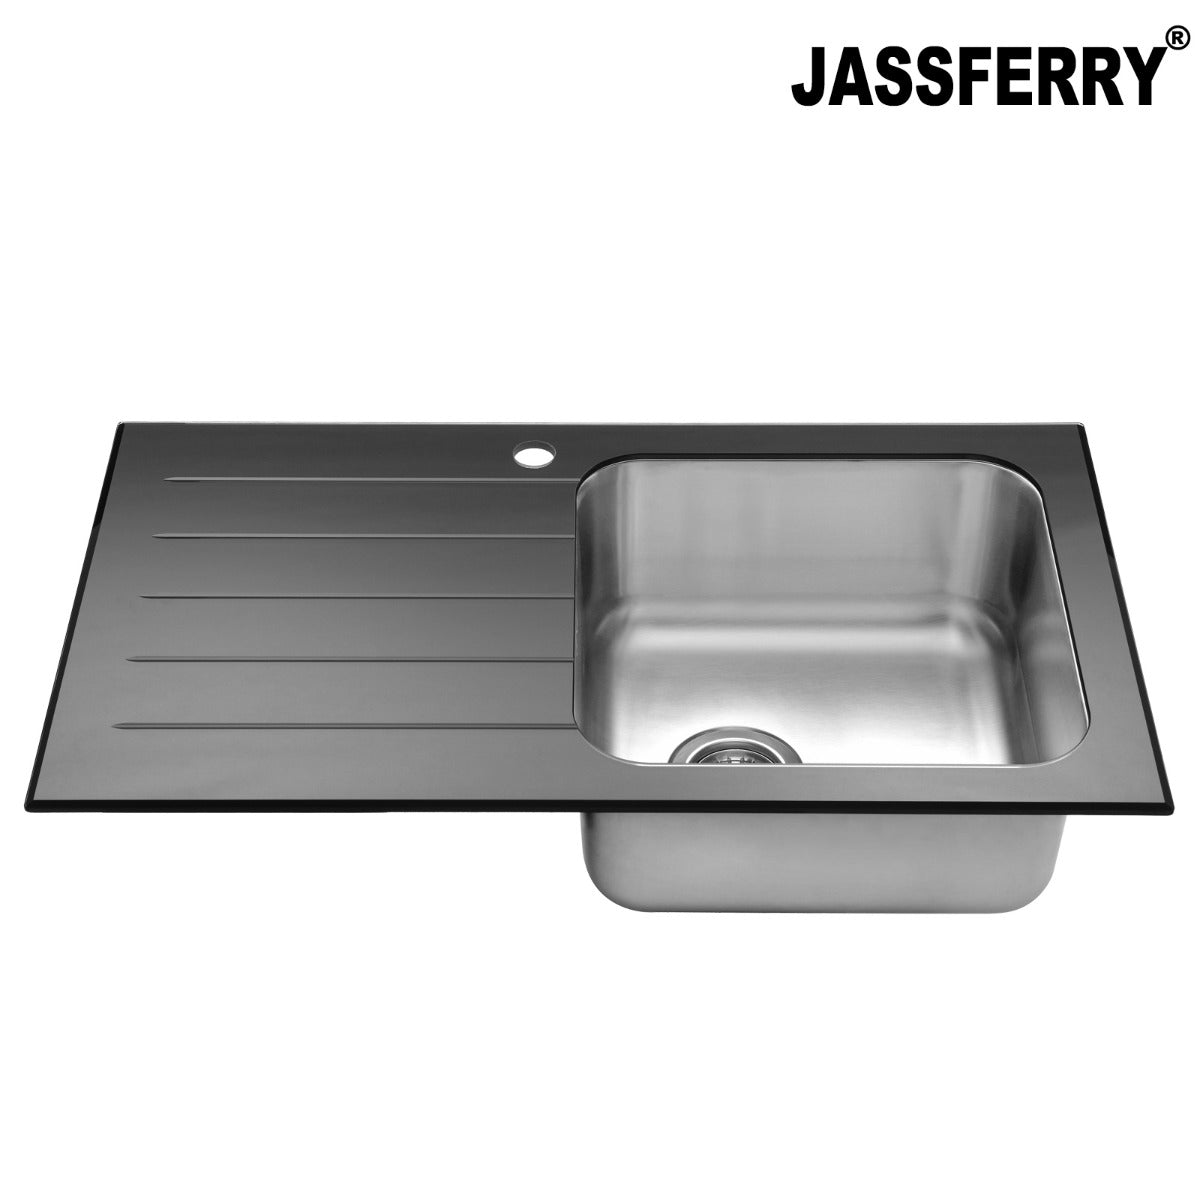 JassferryJASSFERRY Black Glass Top Kitchen Sink 1 Stainless Steel Bowl Lefthand Drainer-772brKitchen Sink